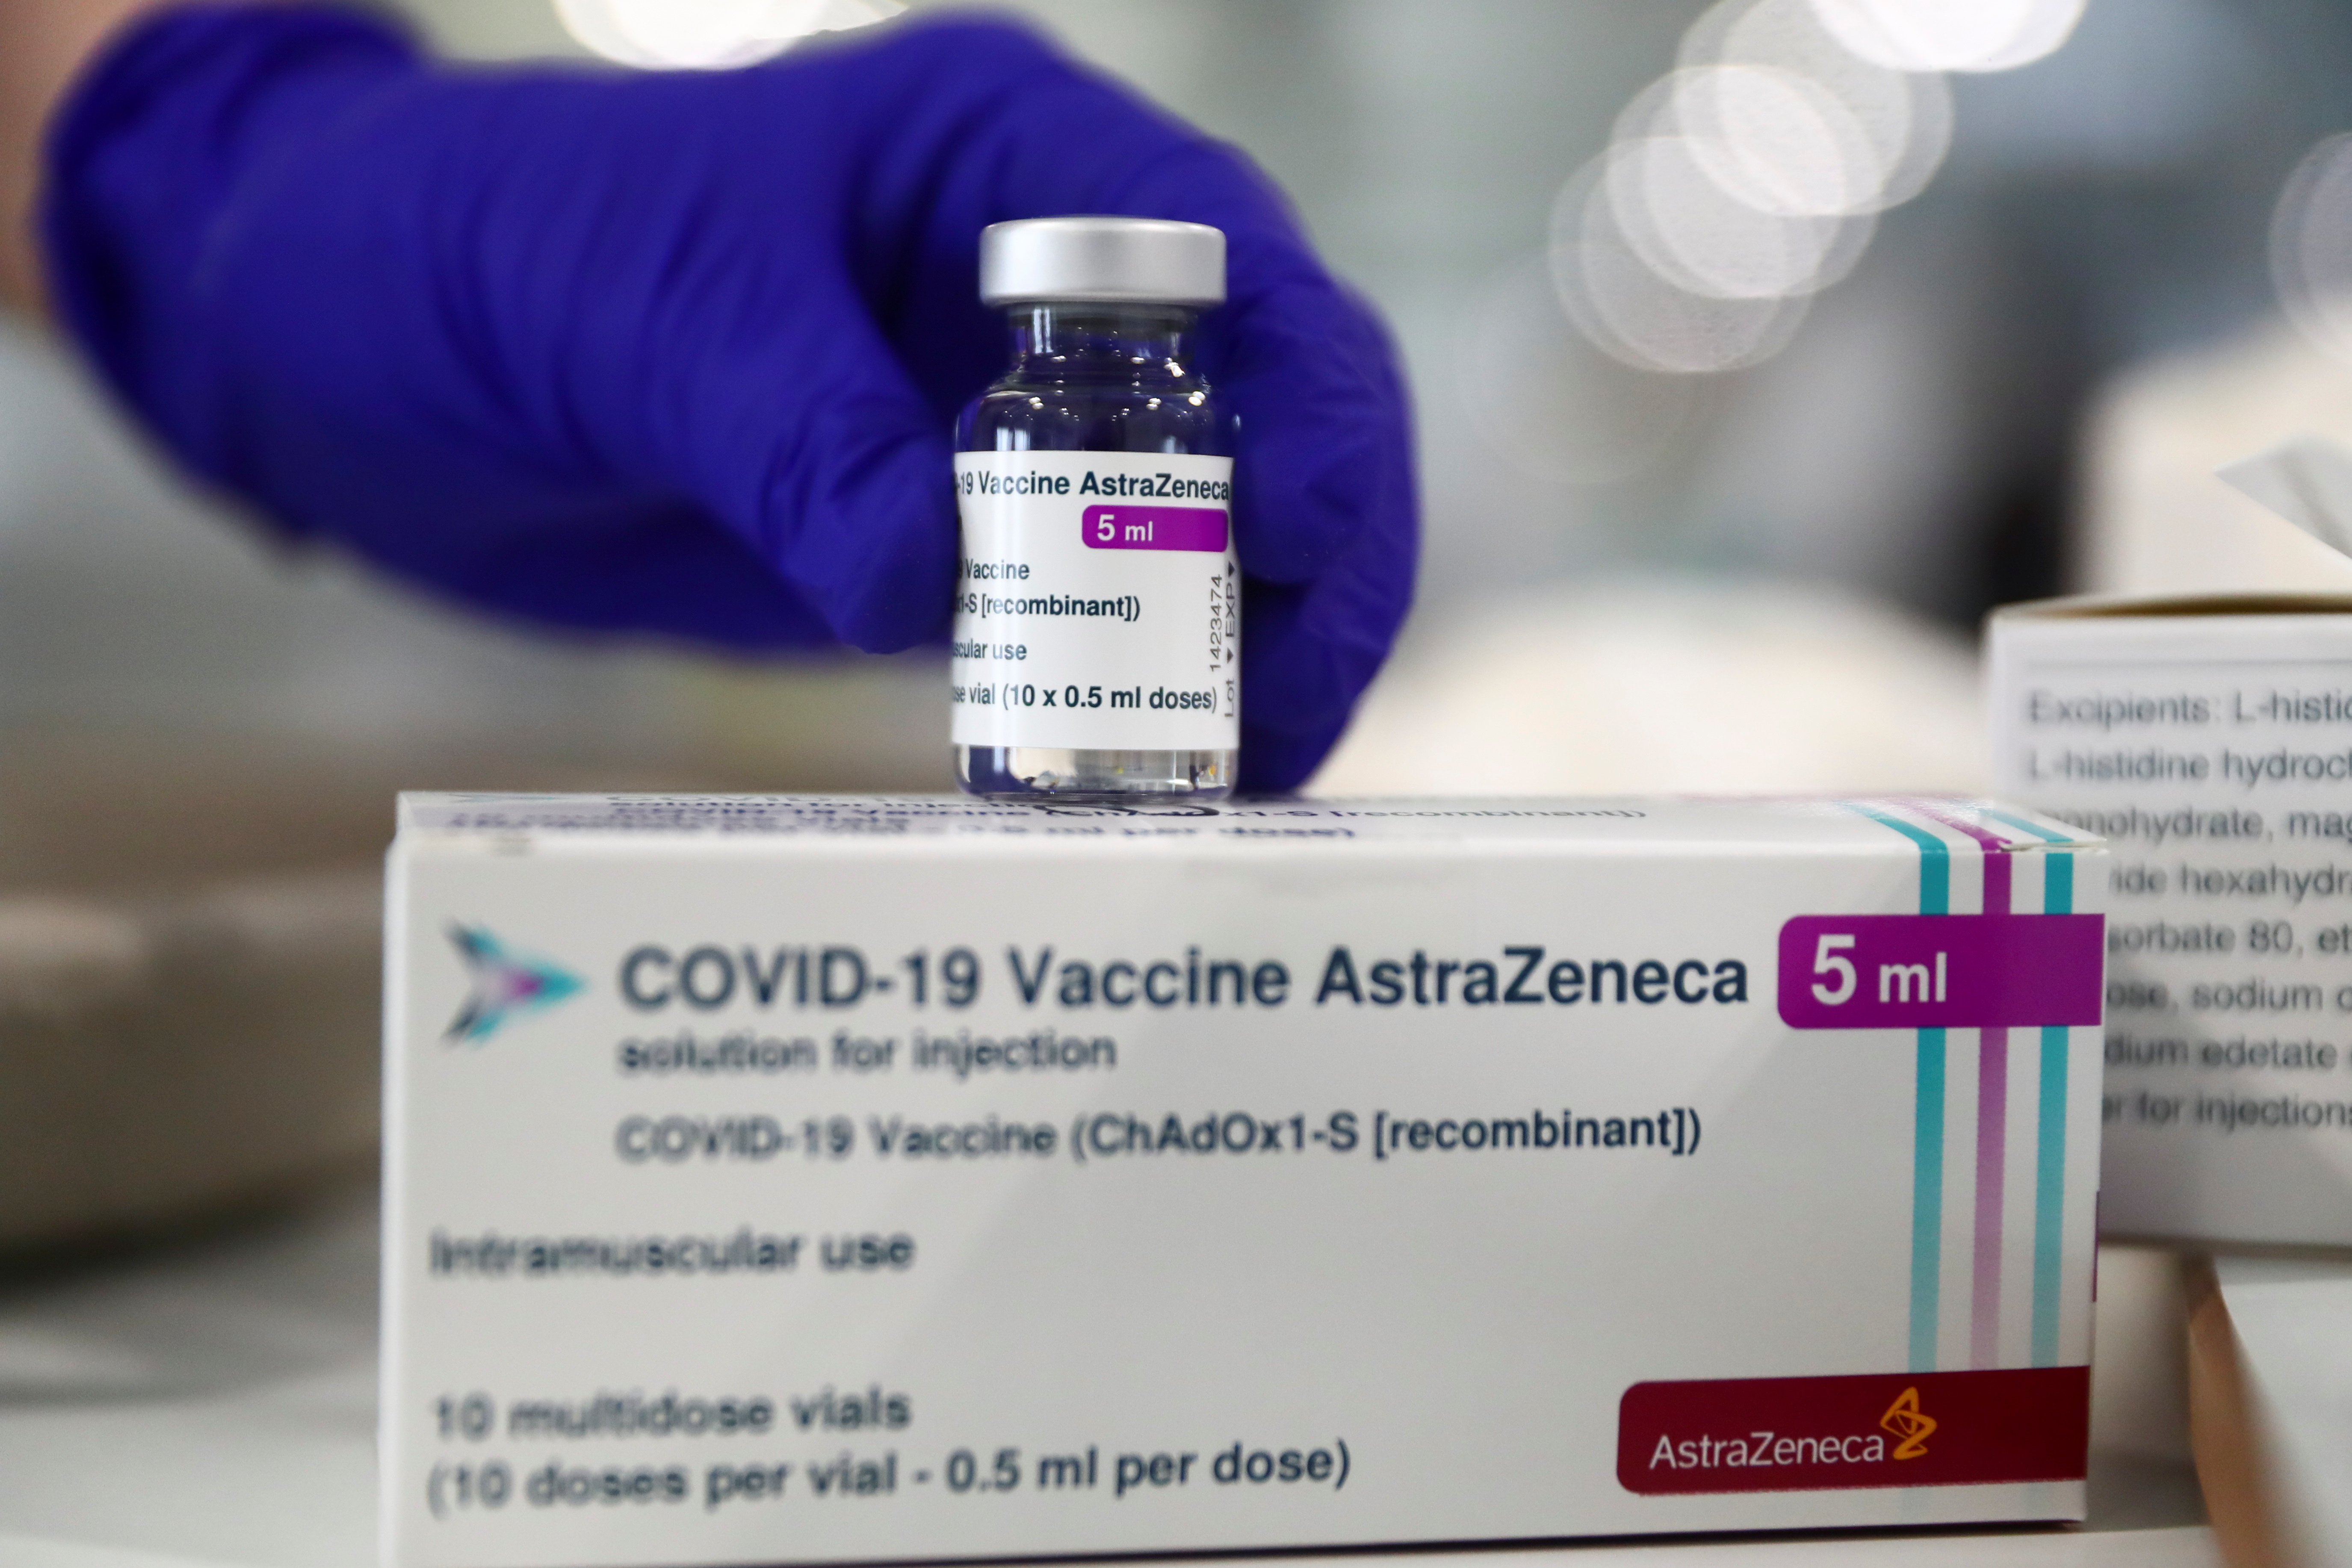 Origin country of astrazeneca vaccine COVID